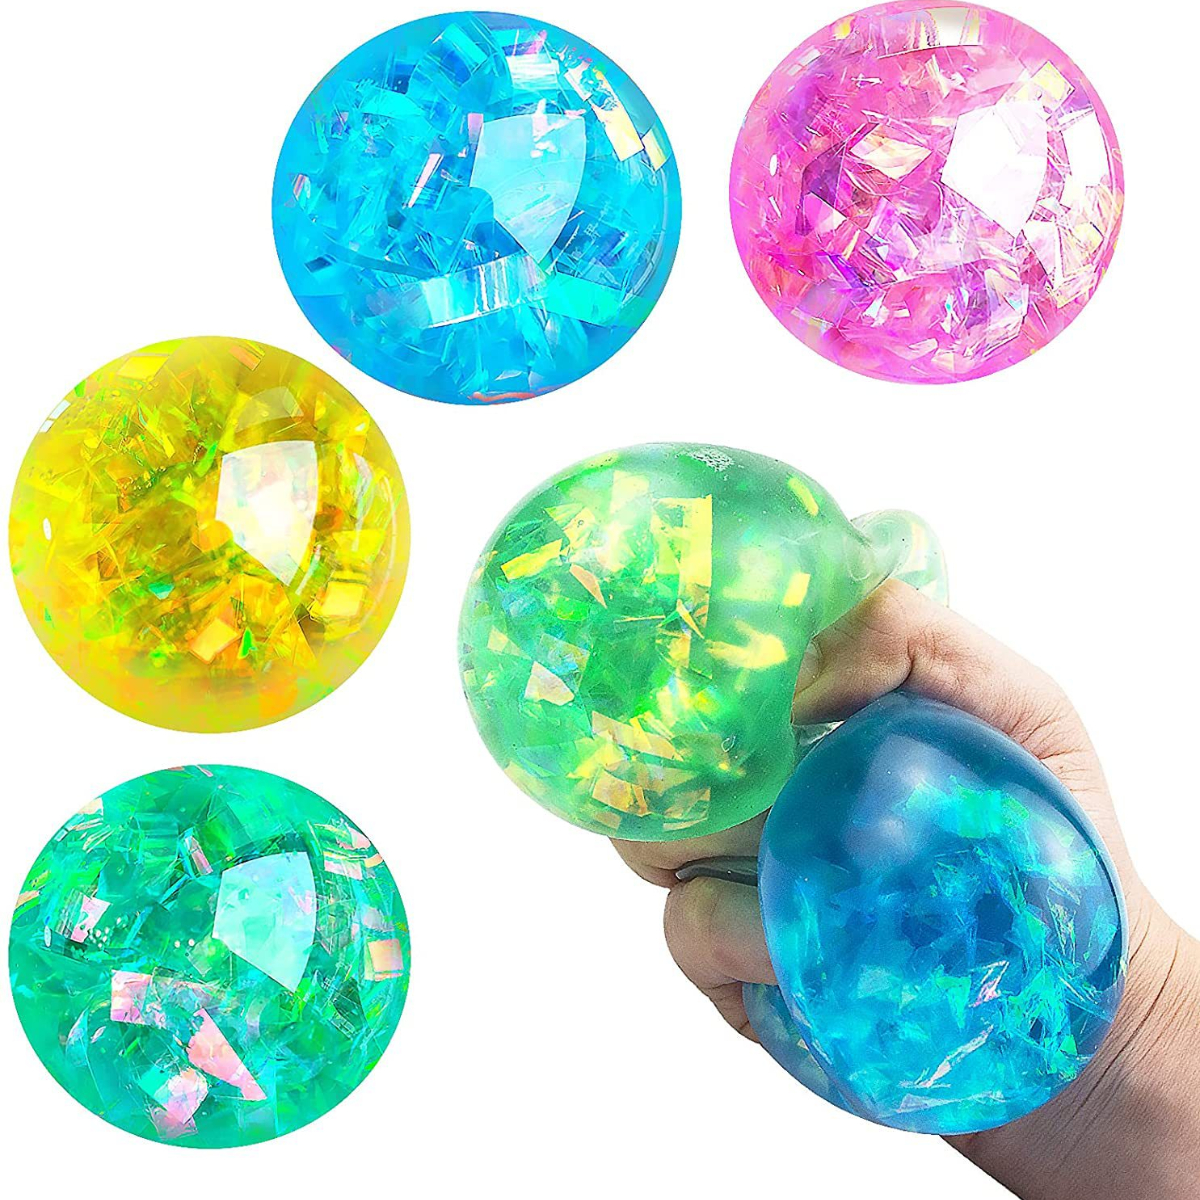 Luckkin 1pc Glitter Foam Led Perle Colorée Perle Raisin Vent Ball  Antistress Stress Relief Fidget Toy Squishy Stressball Pour Enfants Adultes